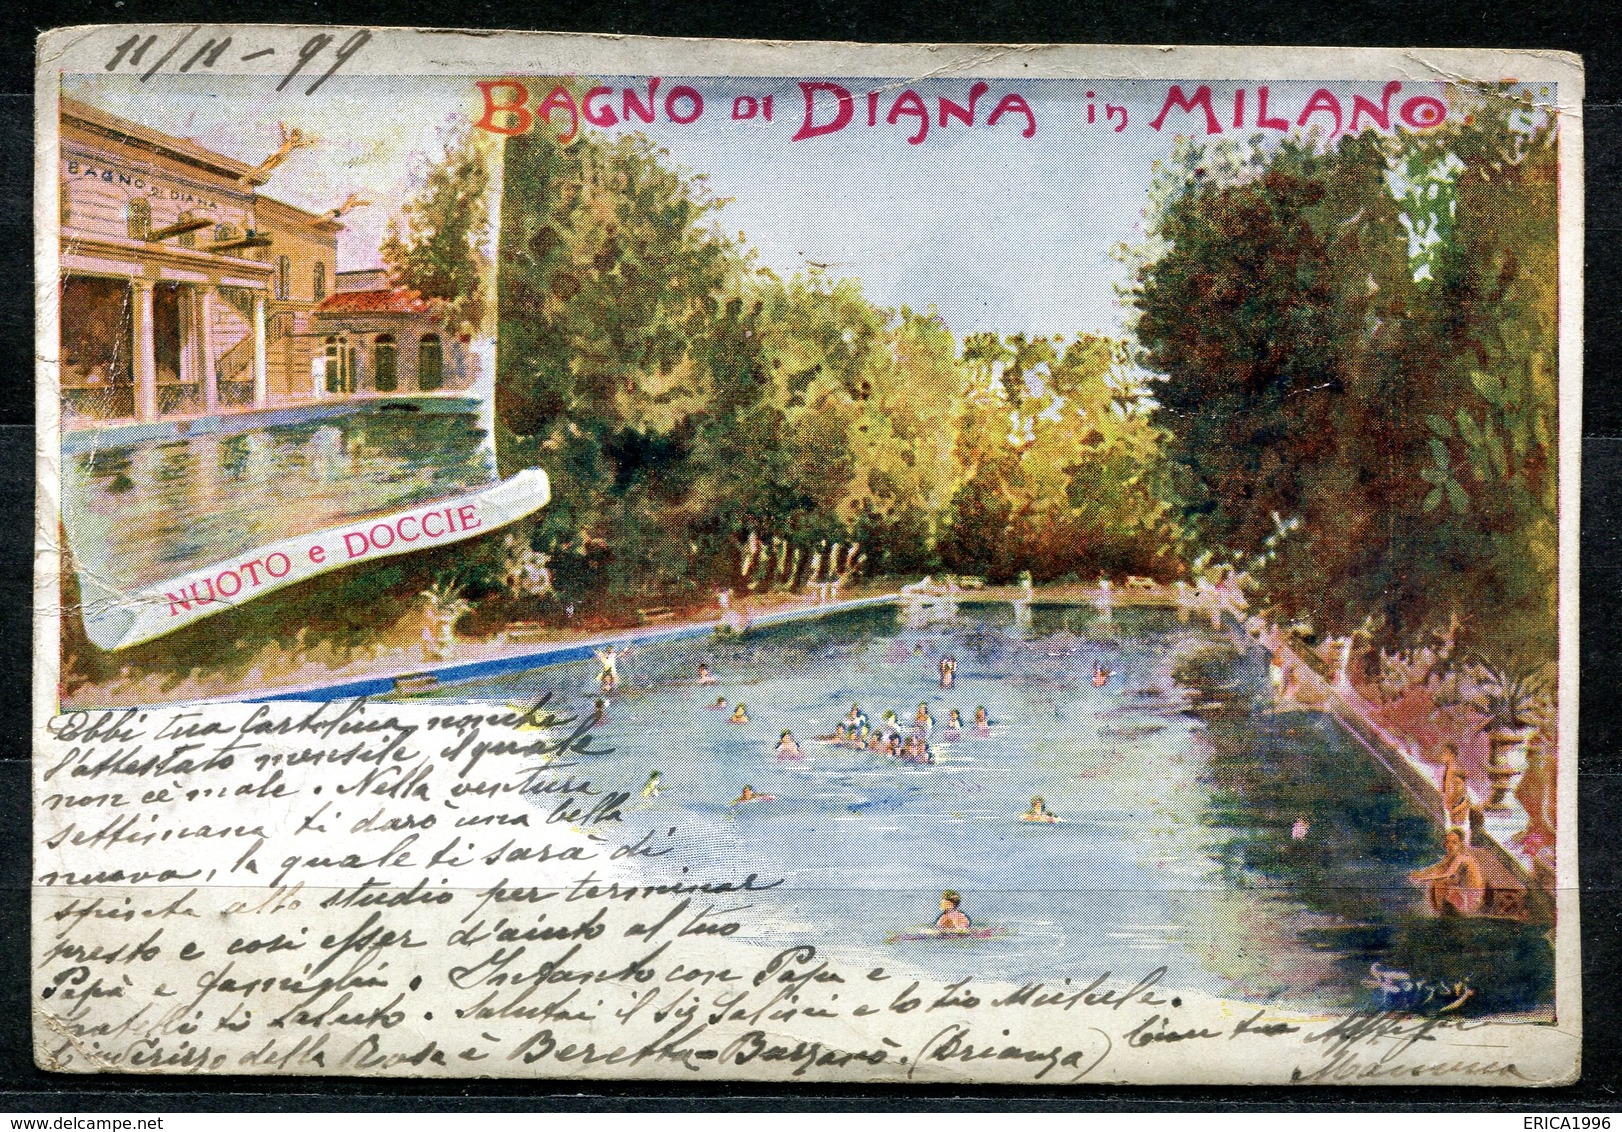 CV2759 MILANO (MI) Bagno Di Diana, Nuoto E Docce, Cartolina Tipo Gruss, FP, Viaggiata 1899 Per La Svizzera, Pieghine Var - Milano